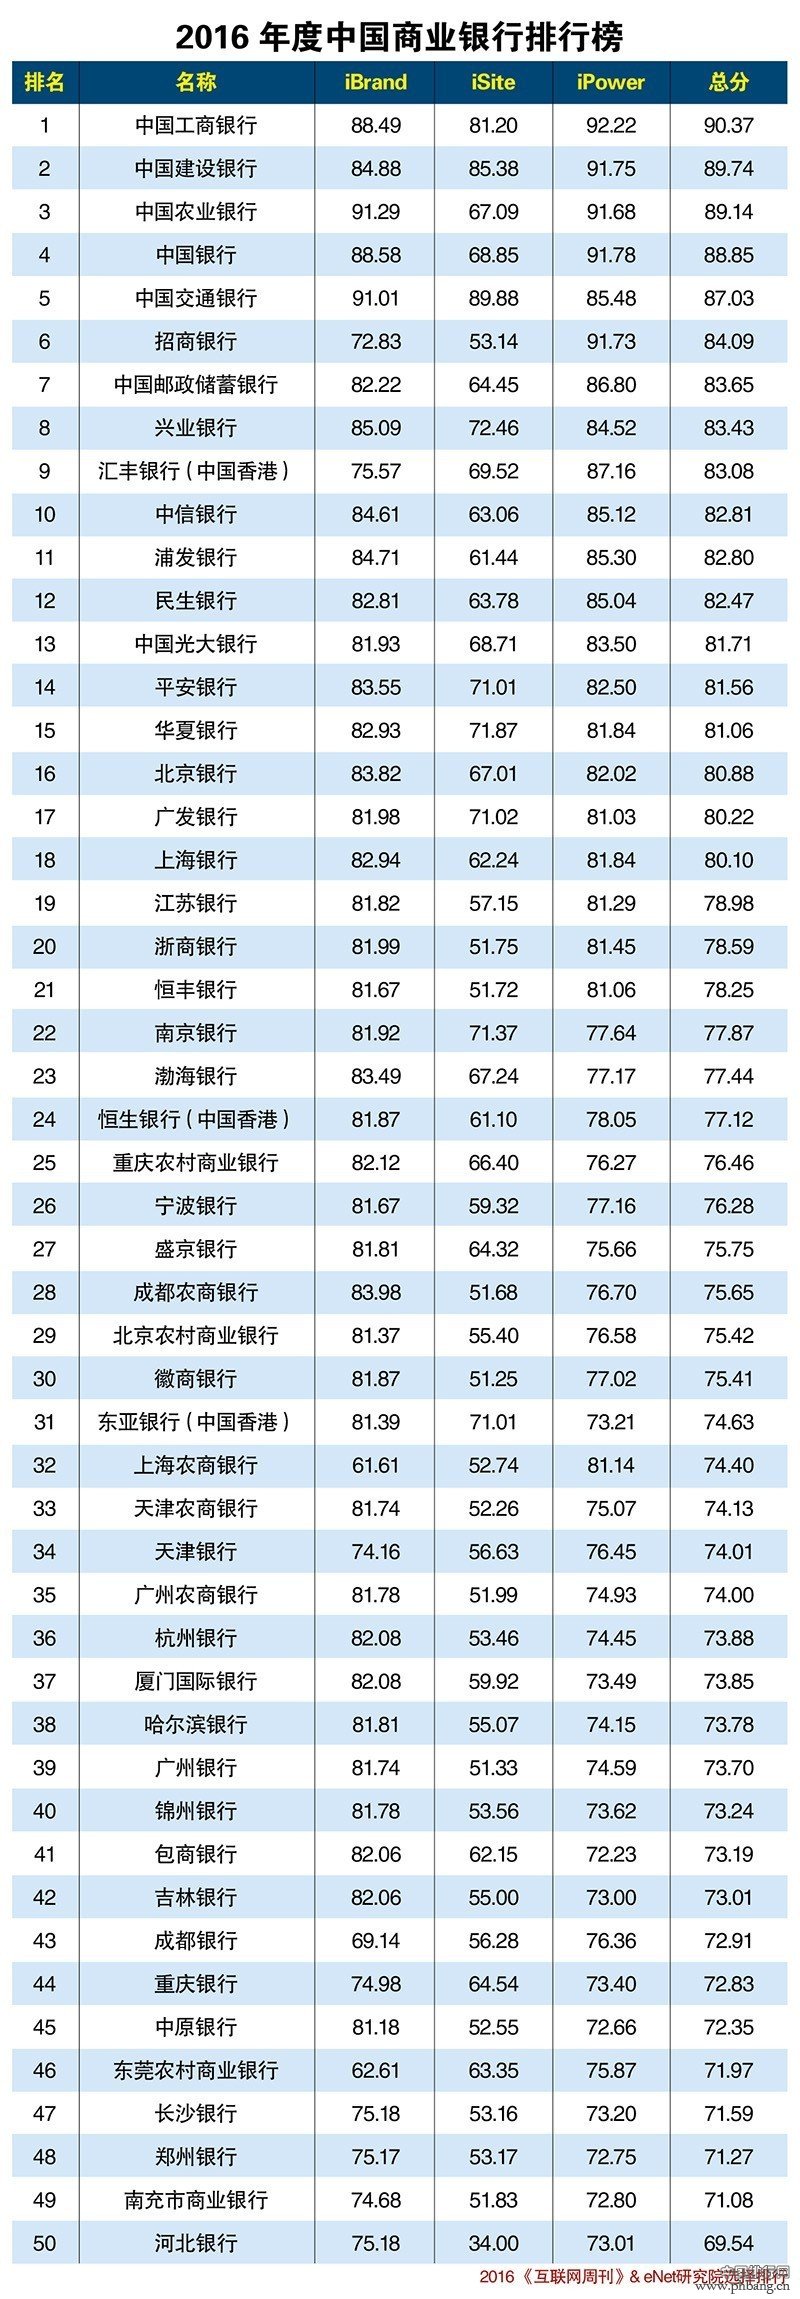 2016年度中国商业银行排行榜